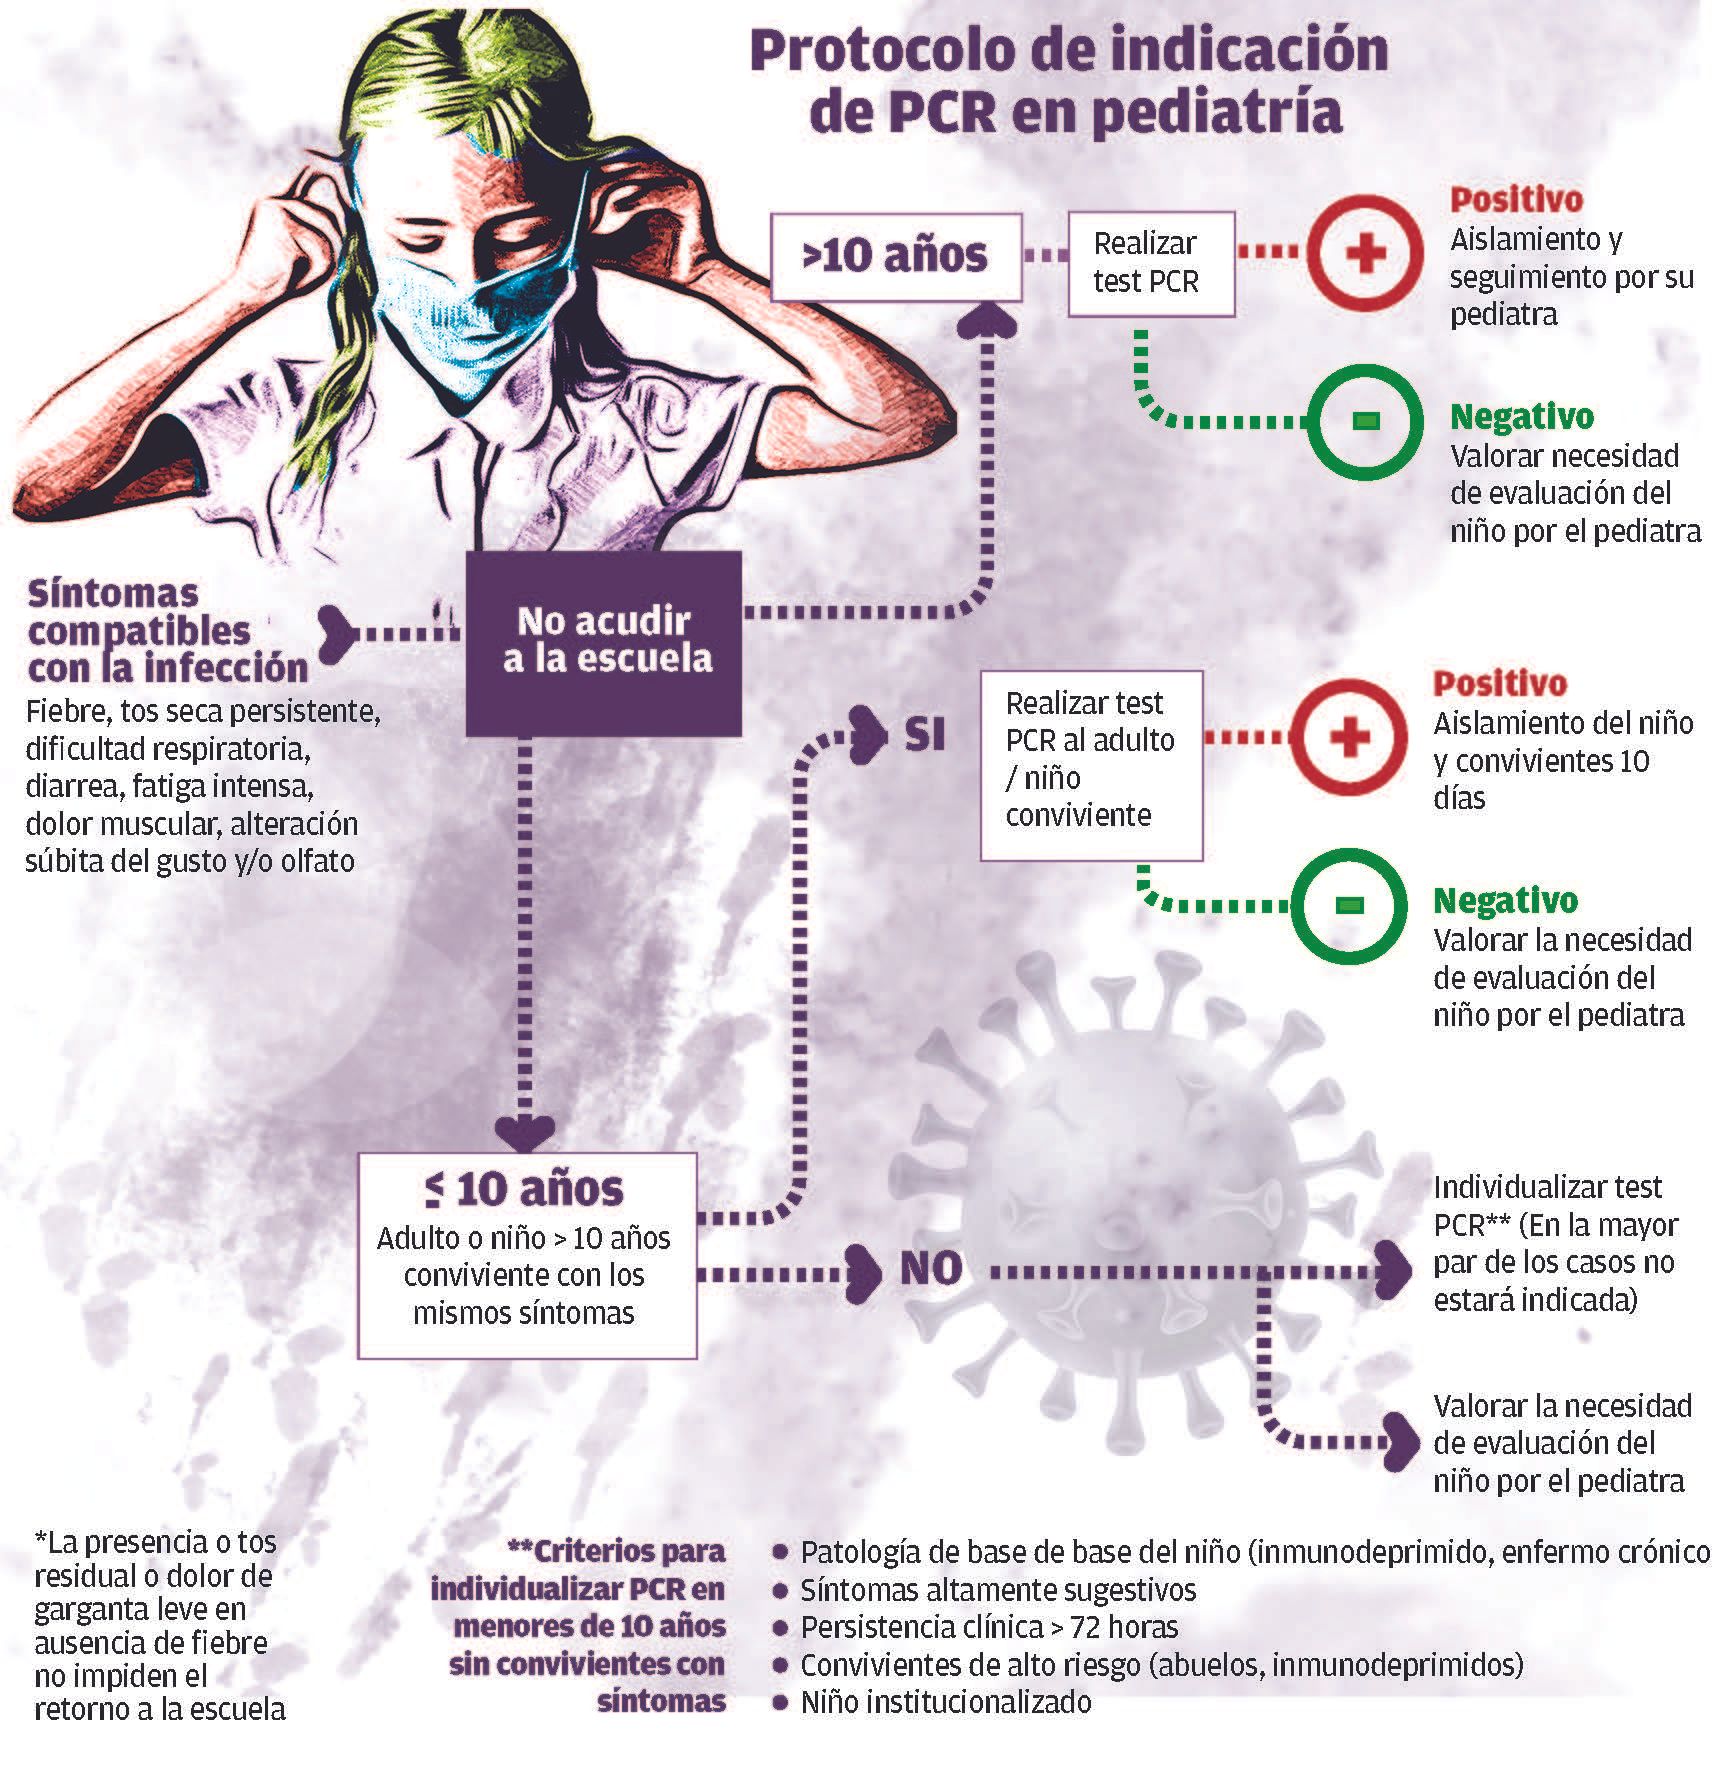 Protocolo actuación PCR pediatría